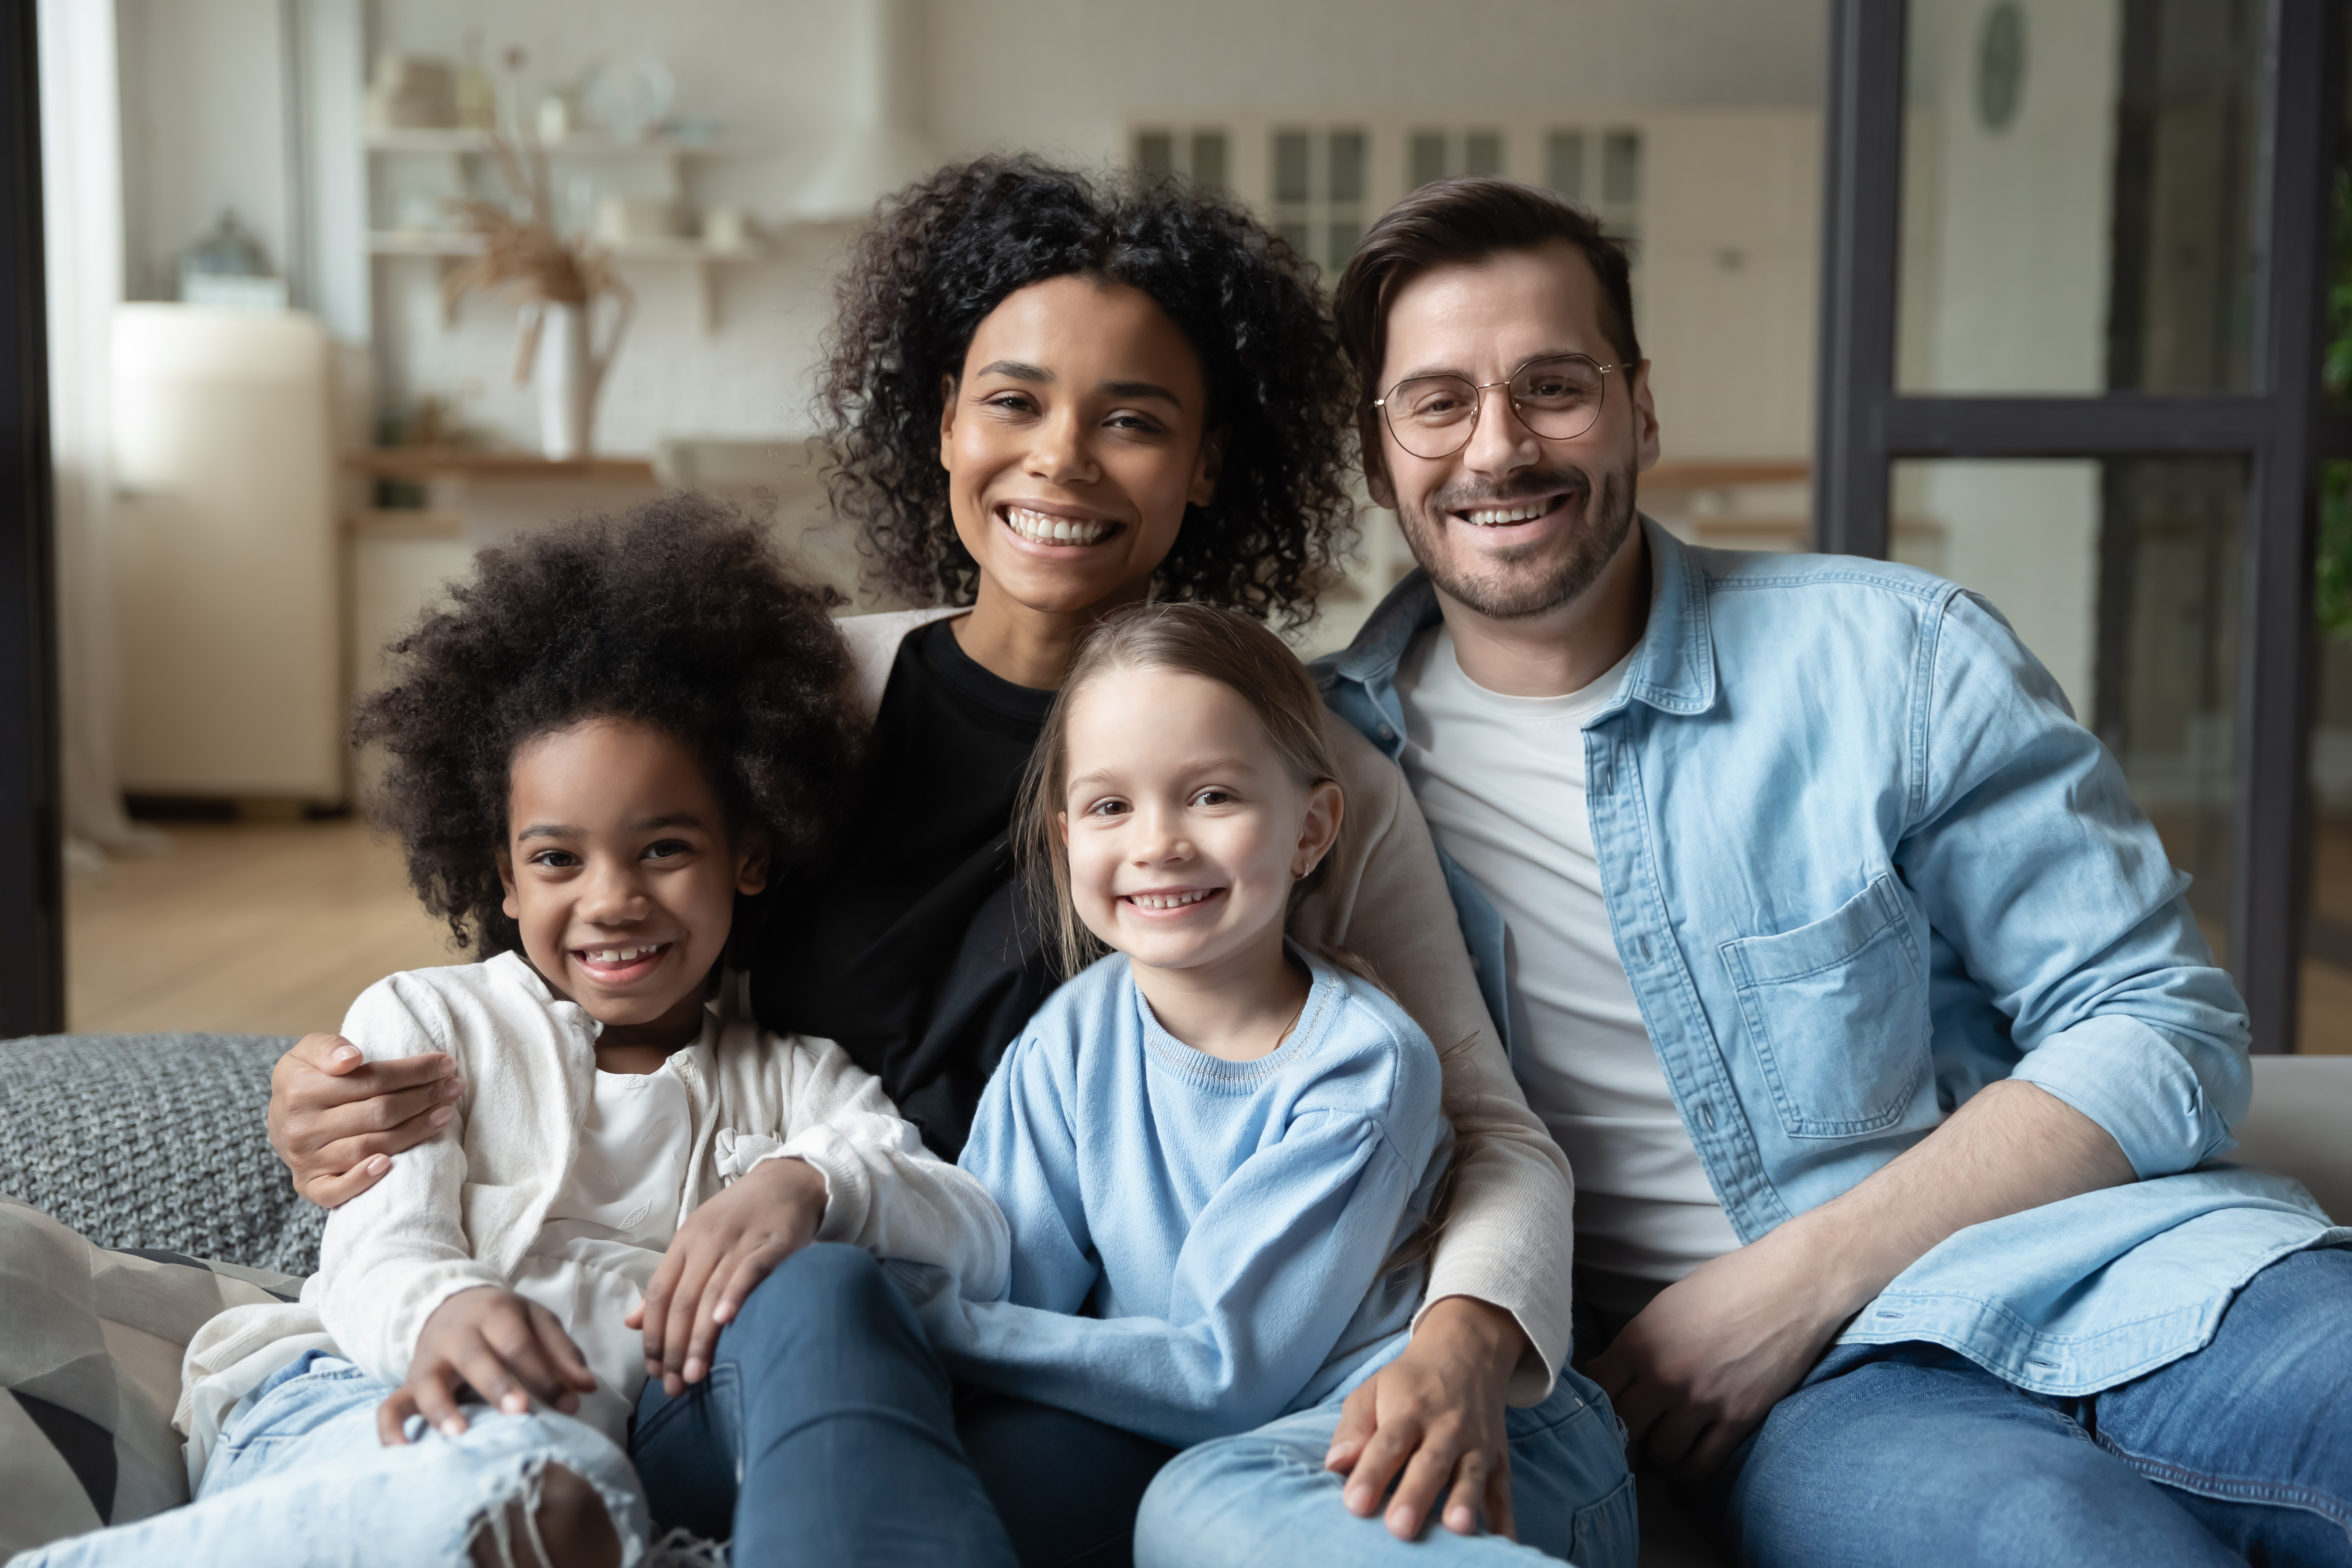 Eine gemischtrassige Familie, bestehend aus einer schwarzen Mutter und ihrem Kind sowie einem weißen Vater und dem anderen Kind | Quelle: Shutterstock